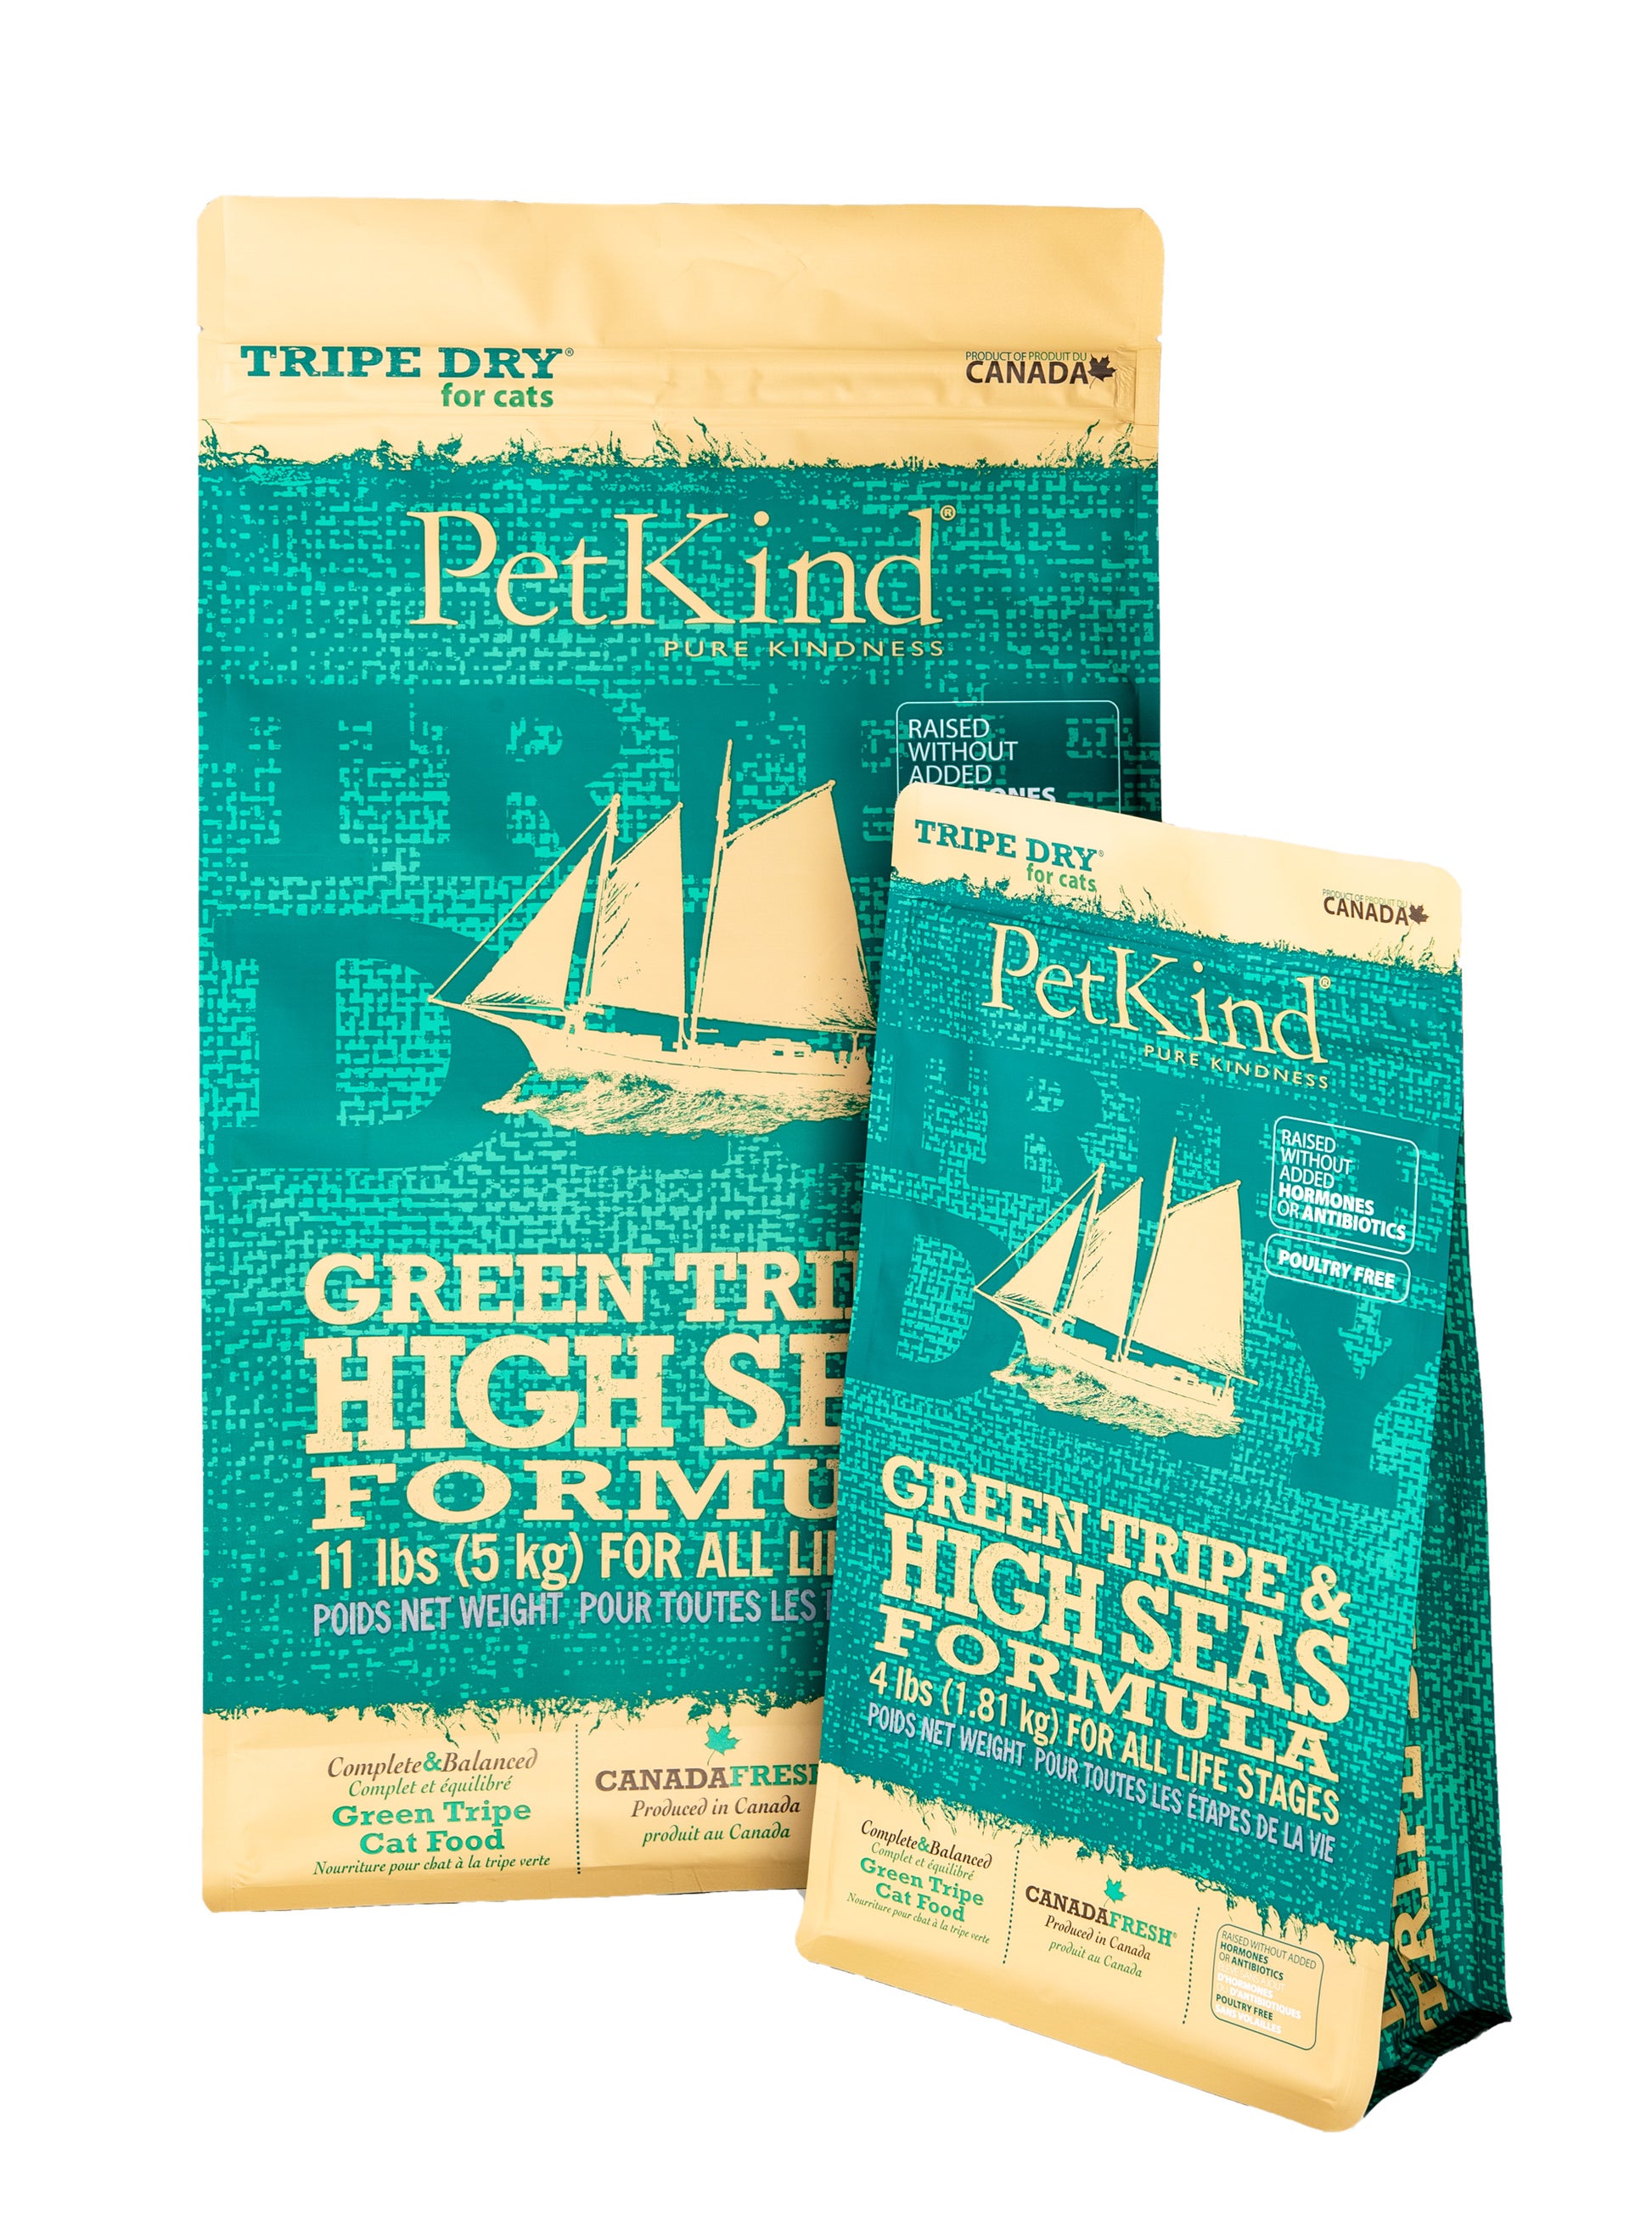 PetKind Green Tripe & High Seas Formual 11 lbs.